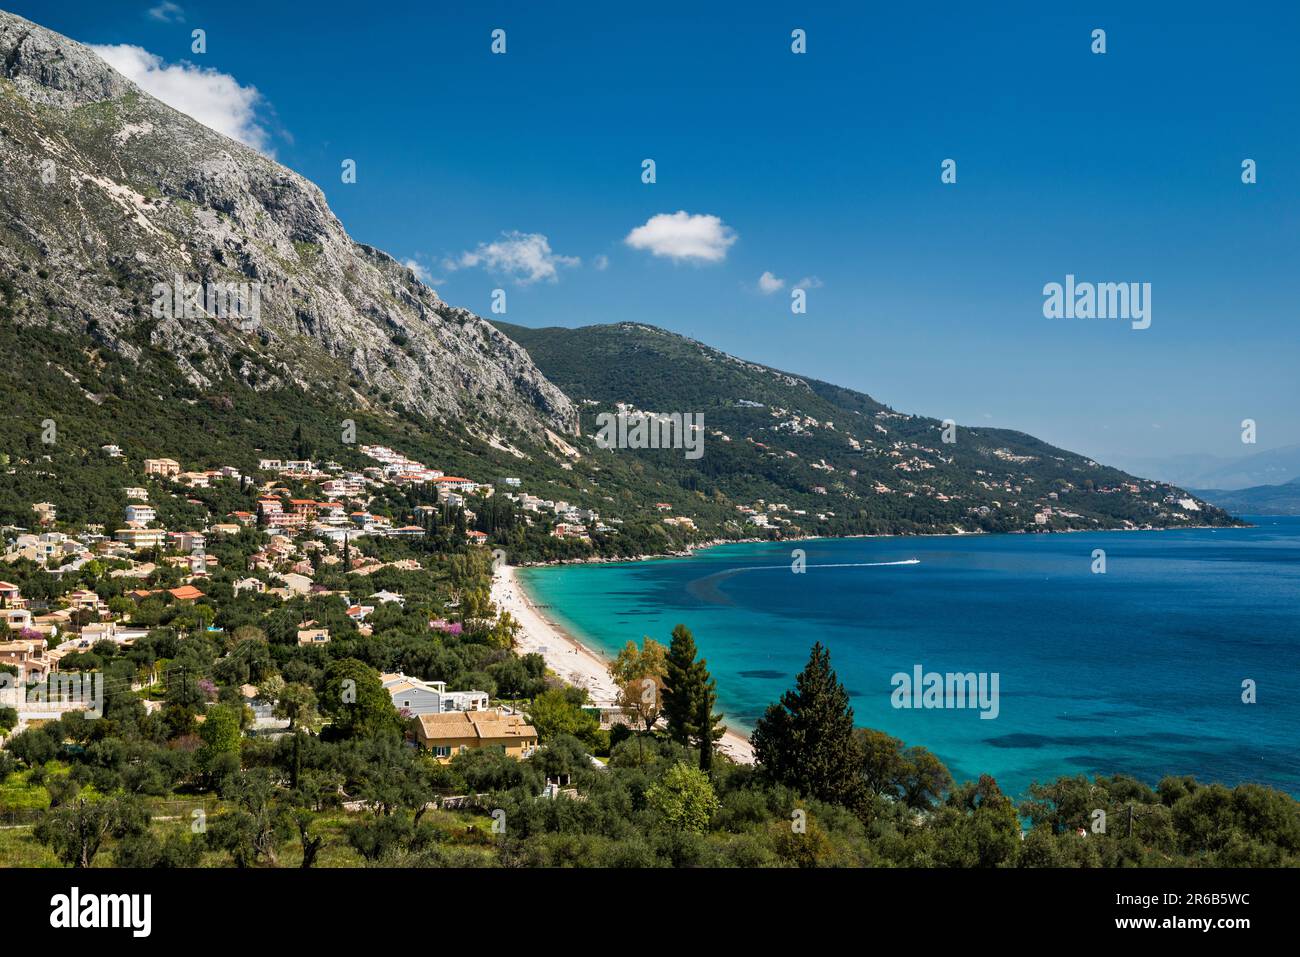 Mount Pantokrator massif over Ionian Sea, Barbati Beach, village of Barbati, Corfu Island, Greece Stock Photo